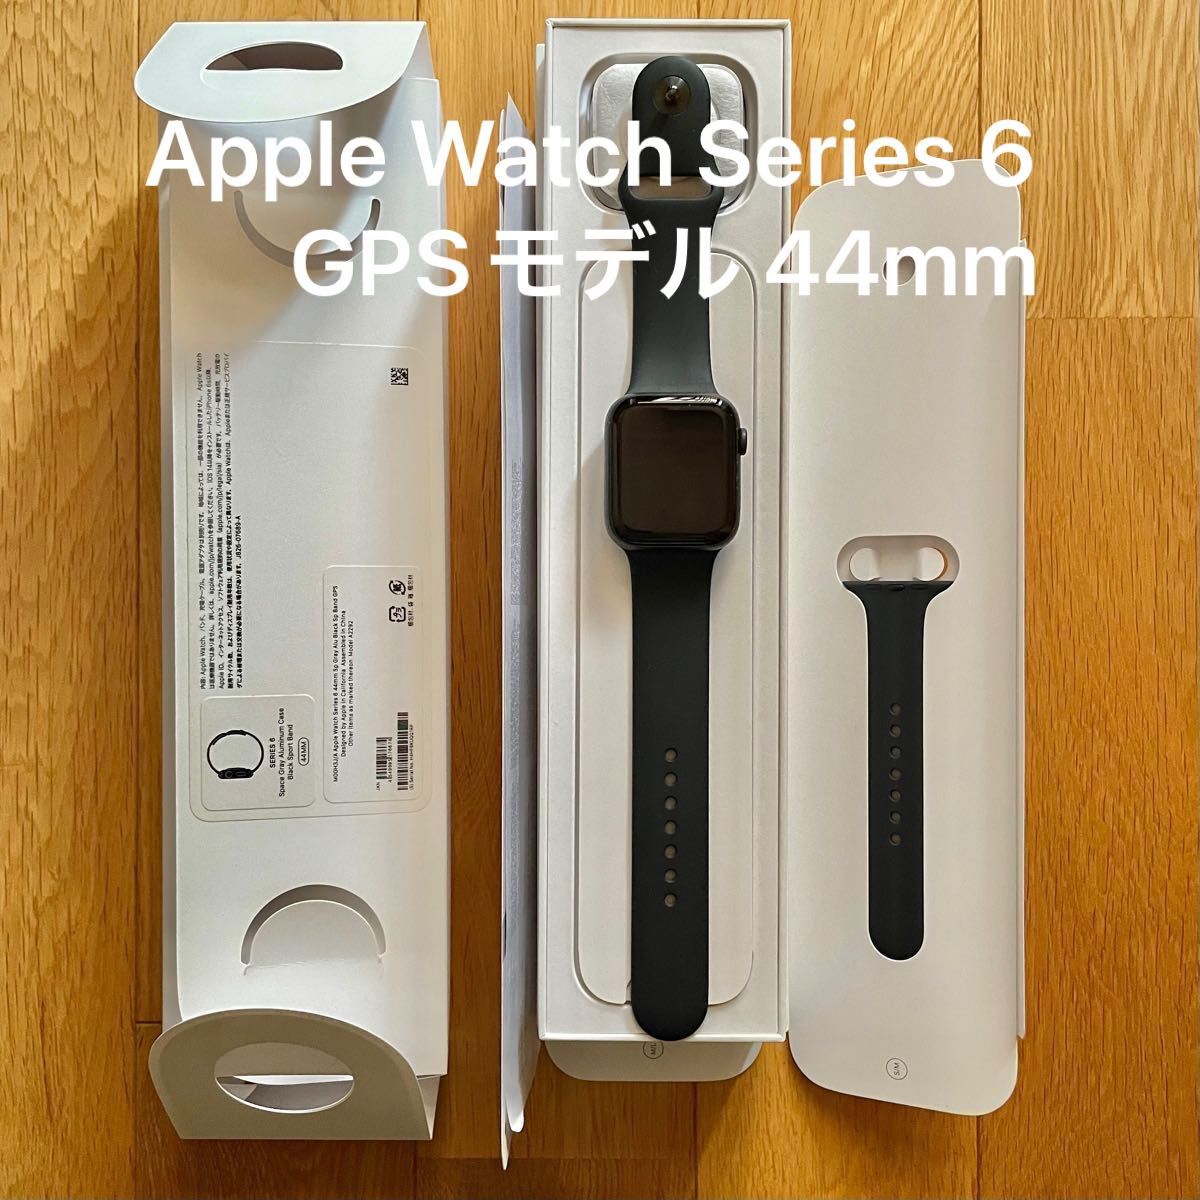 Apple Watch Series 6 GPSモデル 44mm スペースグレイアルミニウム